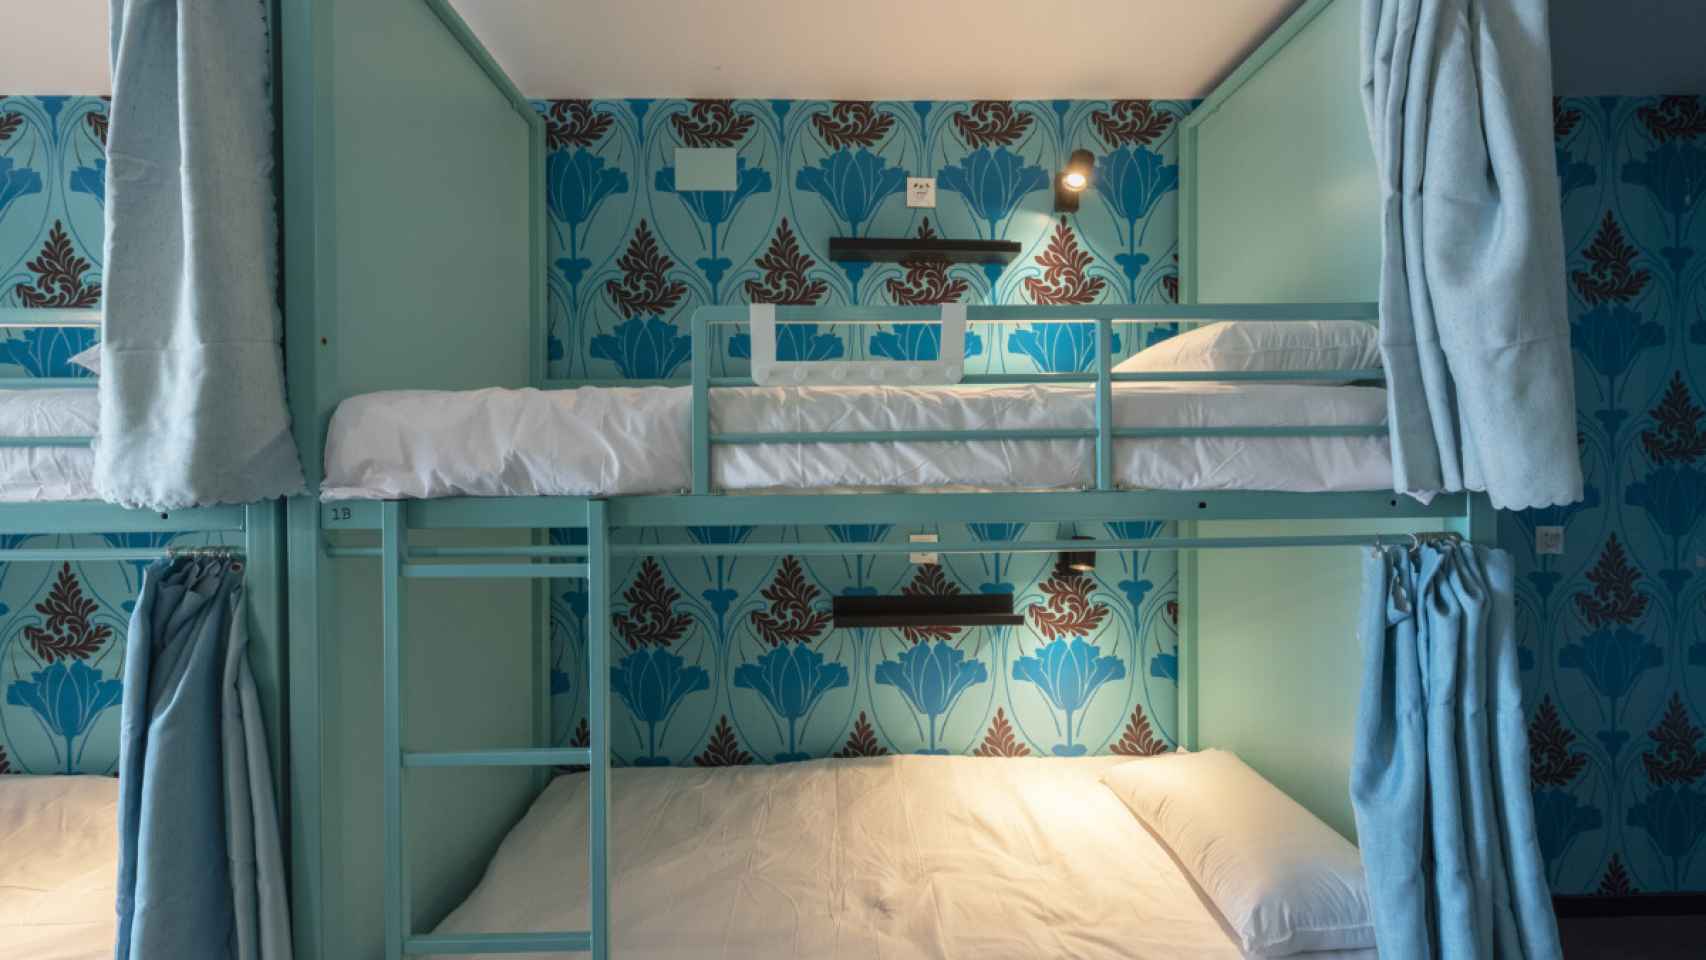 Una habitación de Hostelle Barcelona, en azul